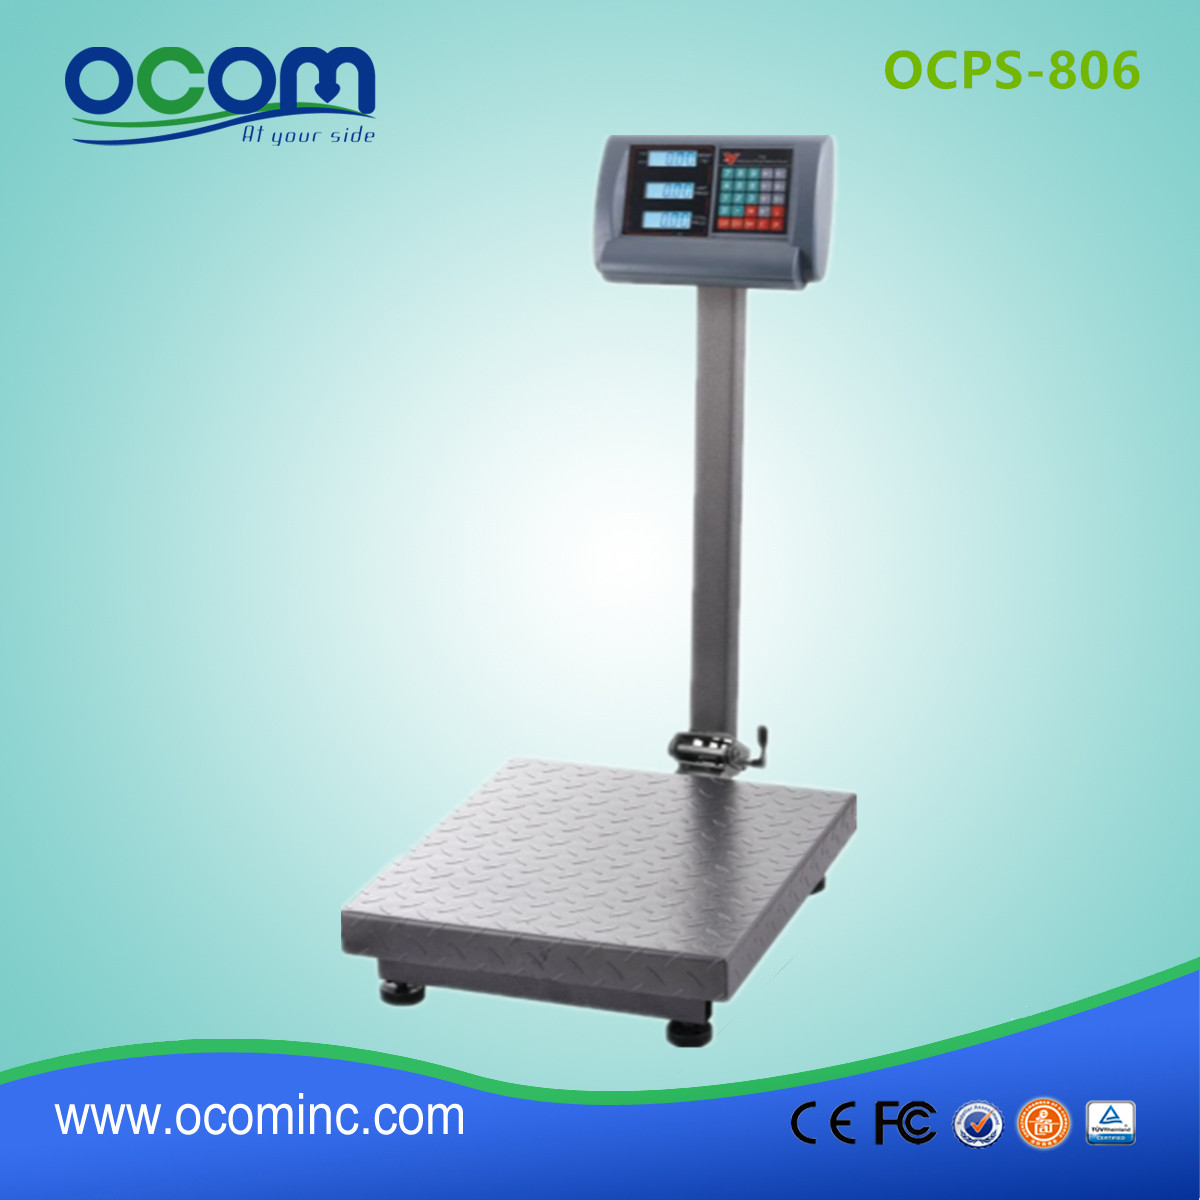 OCPS-806 escala de plataforma de pesagem de preço digital eletrônico com suporte para até 1000 kg